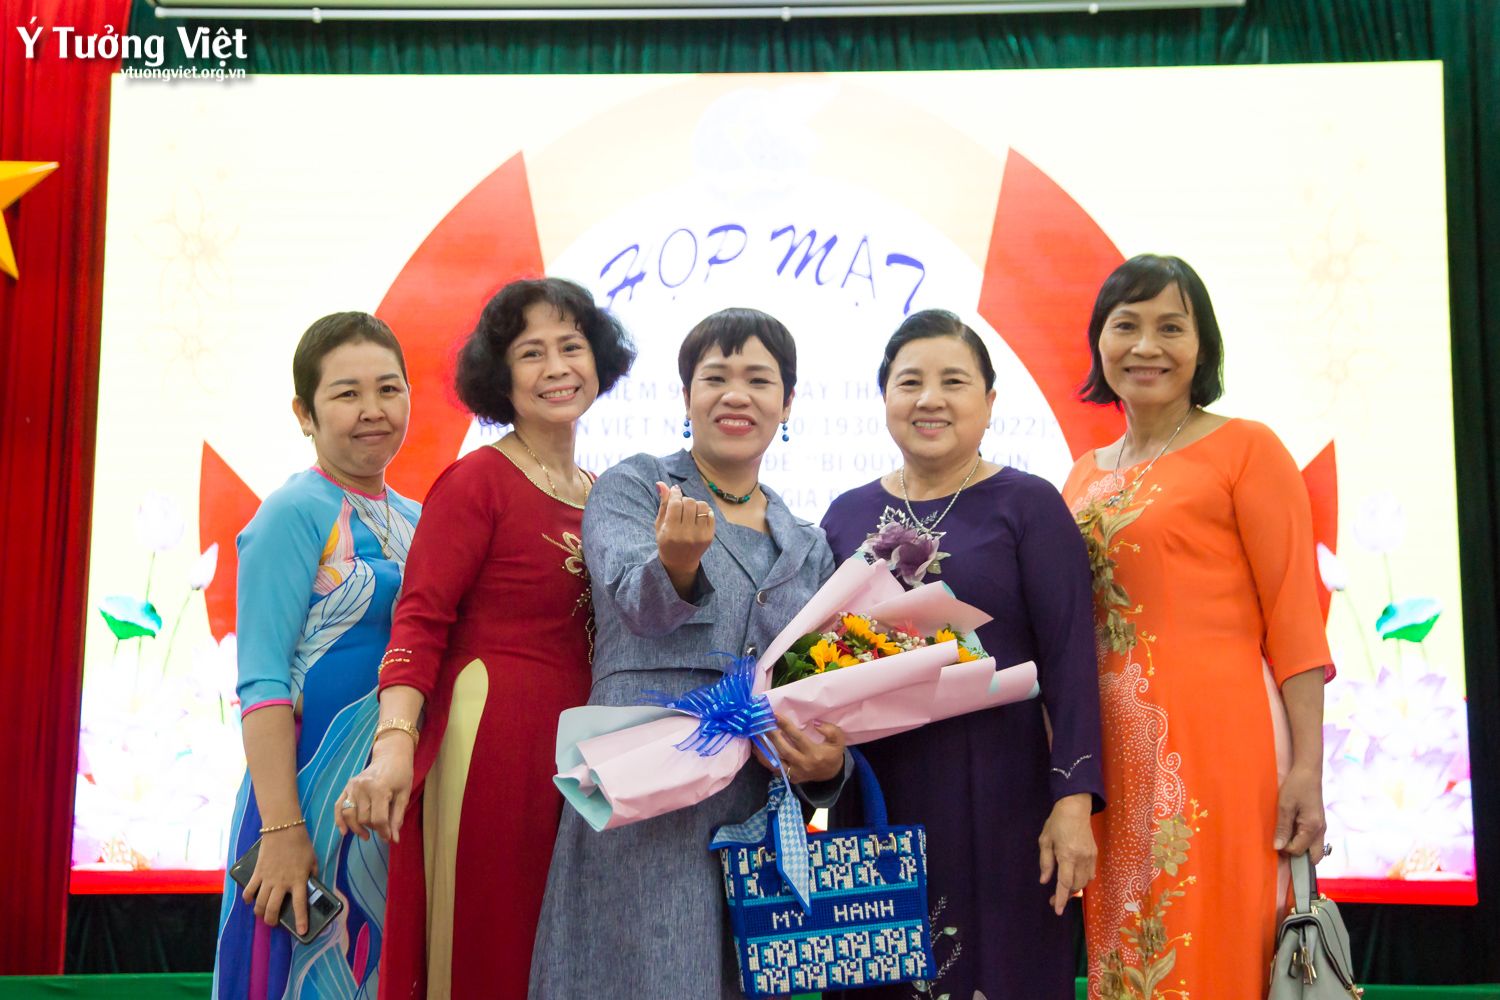 Mừng Kỉ Niệm 92 Năm Thành Lập Hội Liên Hiệp Phụ Nữ Việt Nam, đồng Hành Cùng Ban Chỉ Huy Quân Sự Tỉnh Vĩnh Long Trong Chuyên đề Bí Kíp Xây Dựng Gia đình Hạnh Phúc 09